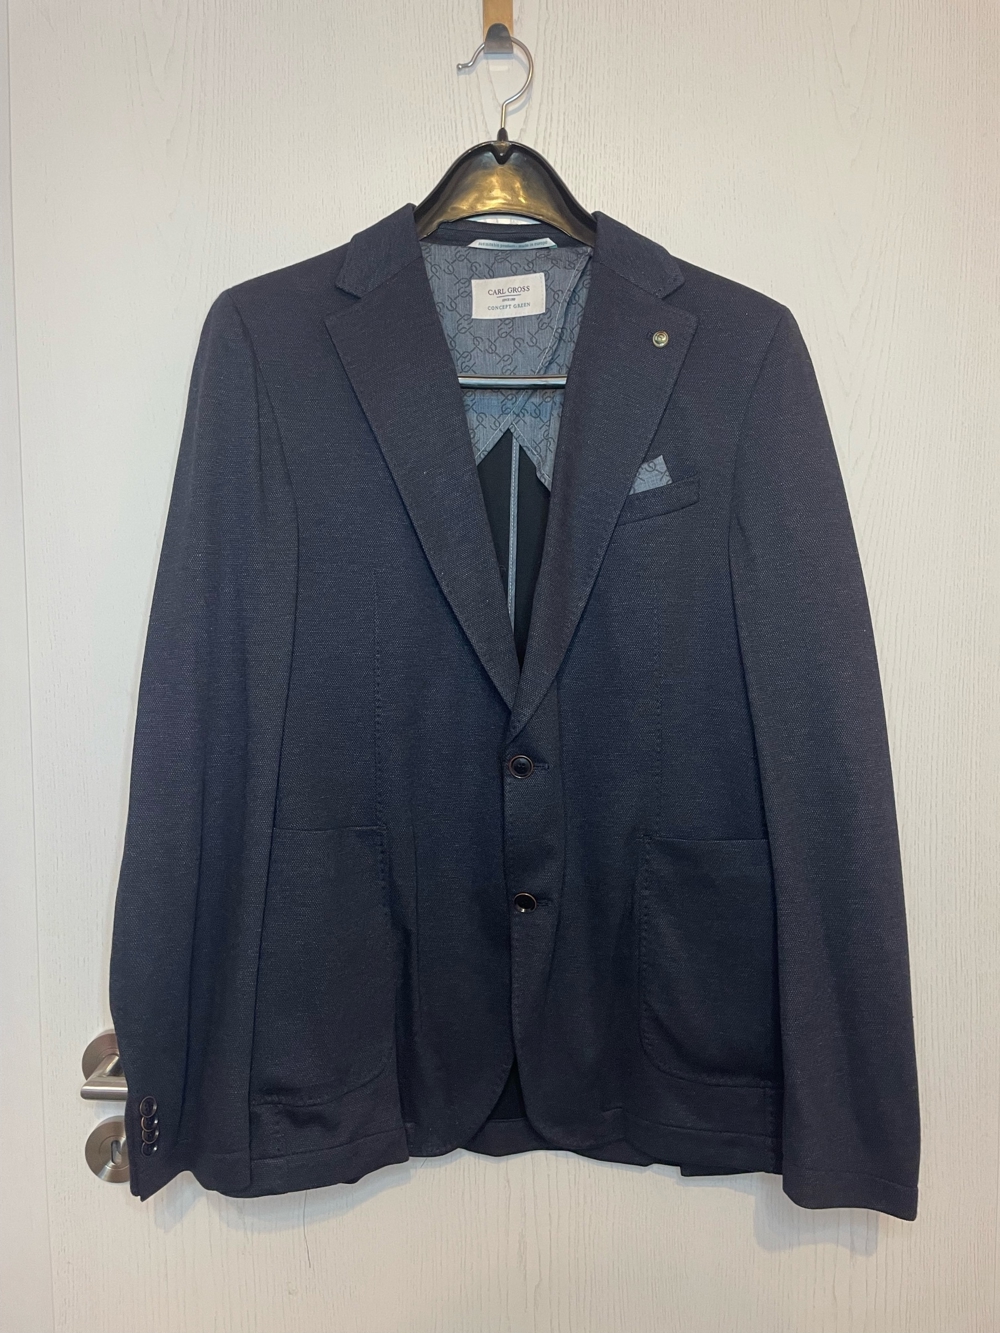 Carl Gross Sakko, Concept Green, dunkelblauer Anzug, Größe 56, Neu